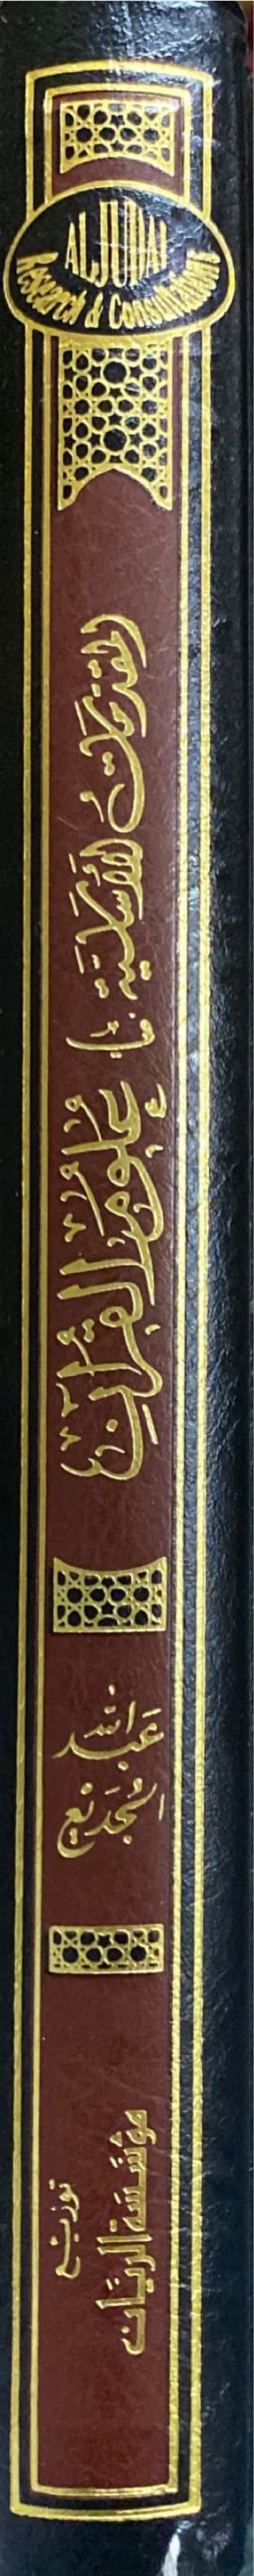 المقدمات الأساسية في علوم القران Al Muqadimat Al Asasiya Fi Ulum Al Quran